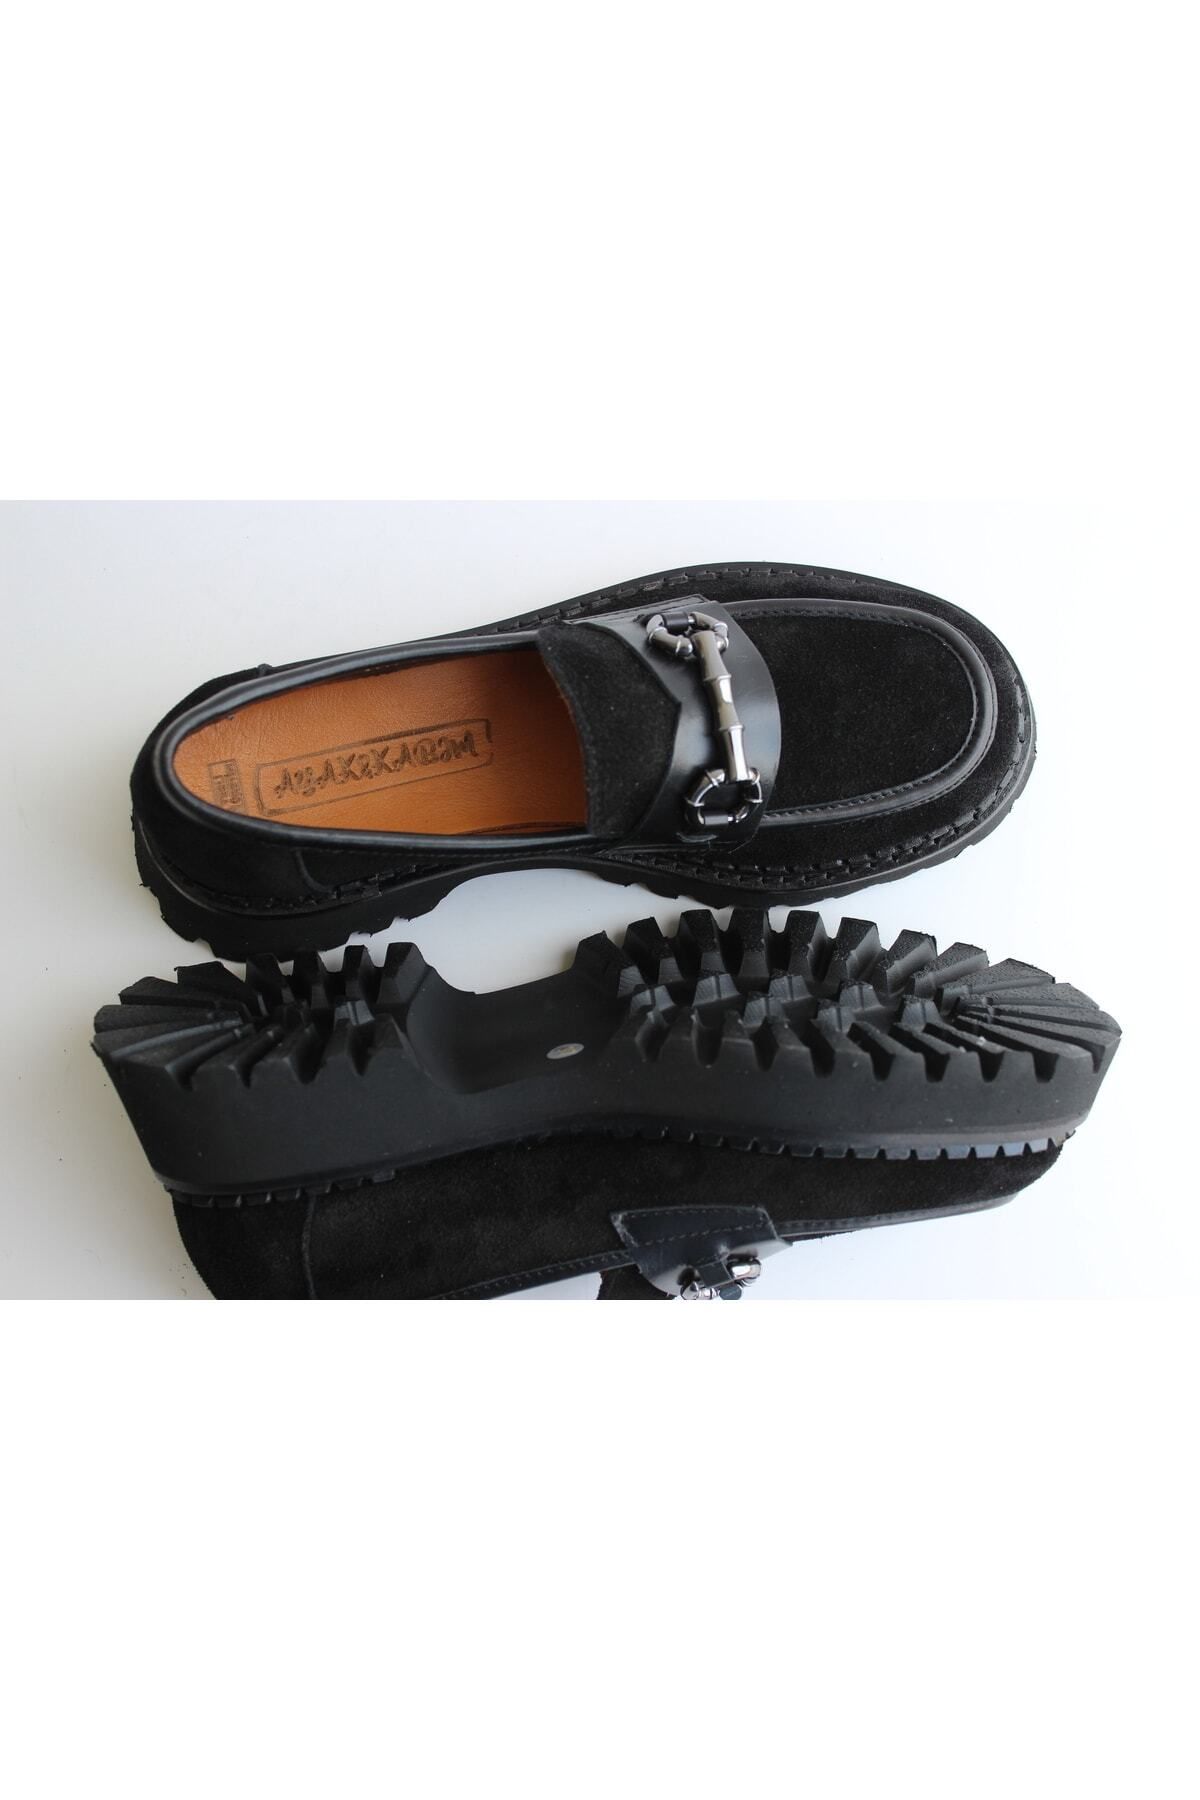 AYAK&KABIM Hakiki Deri Siyah Günlük Kadın Ayakkabı Loafer Makosen Deri Tokalı Günlük Aykkbm2515